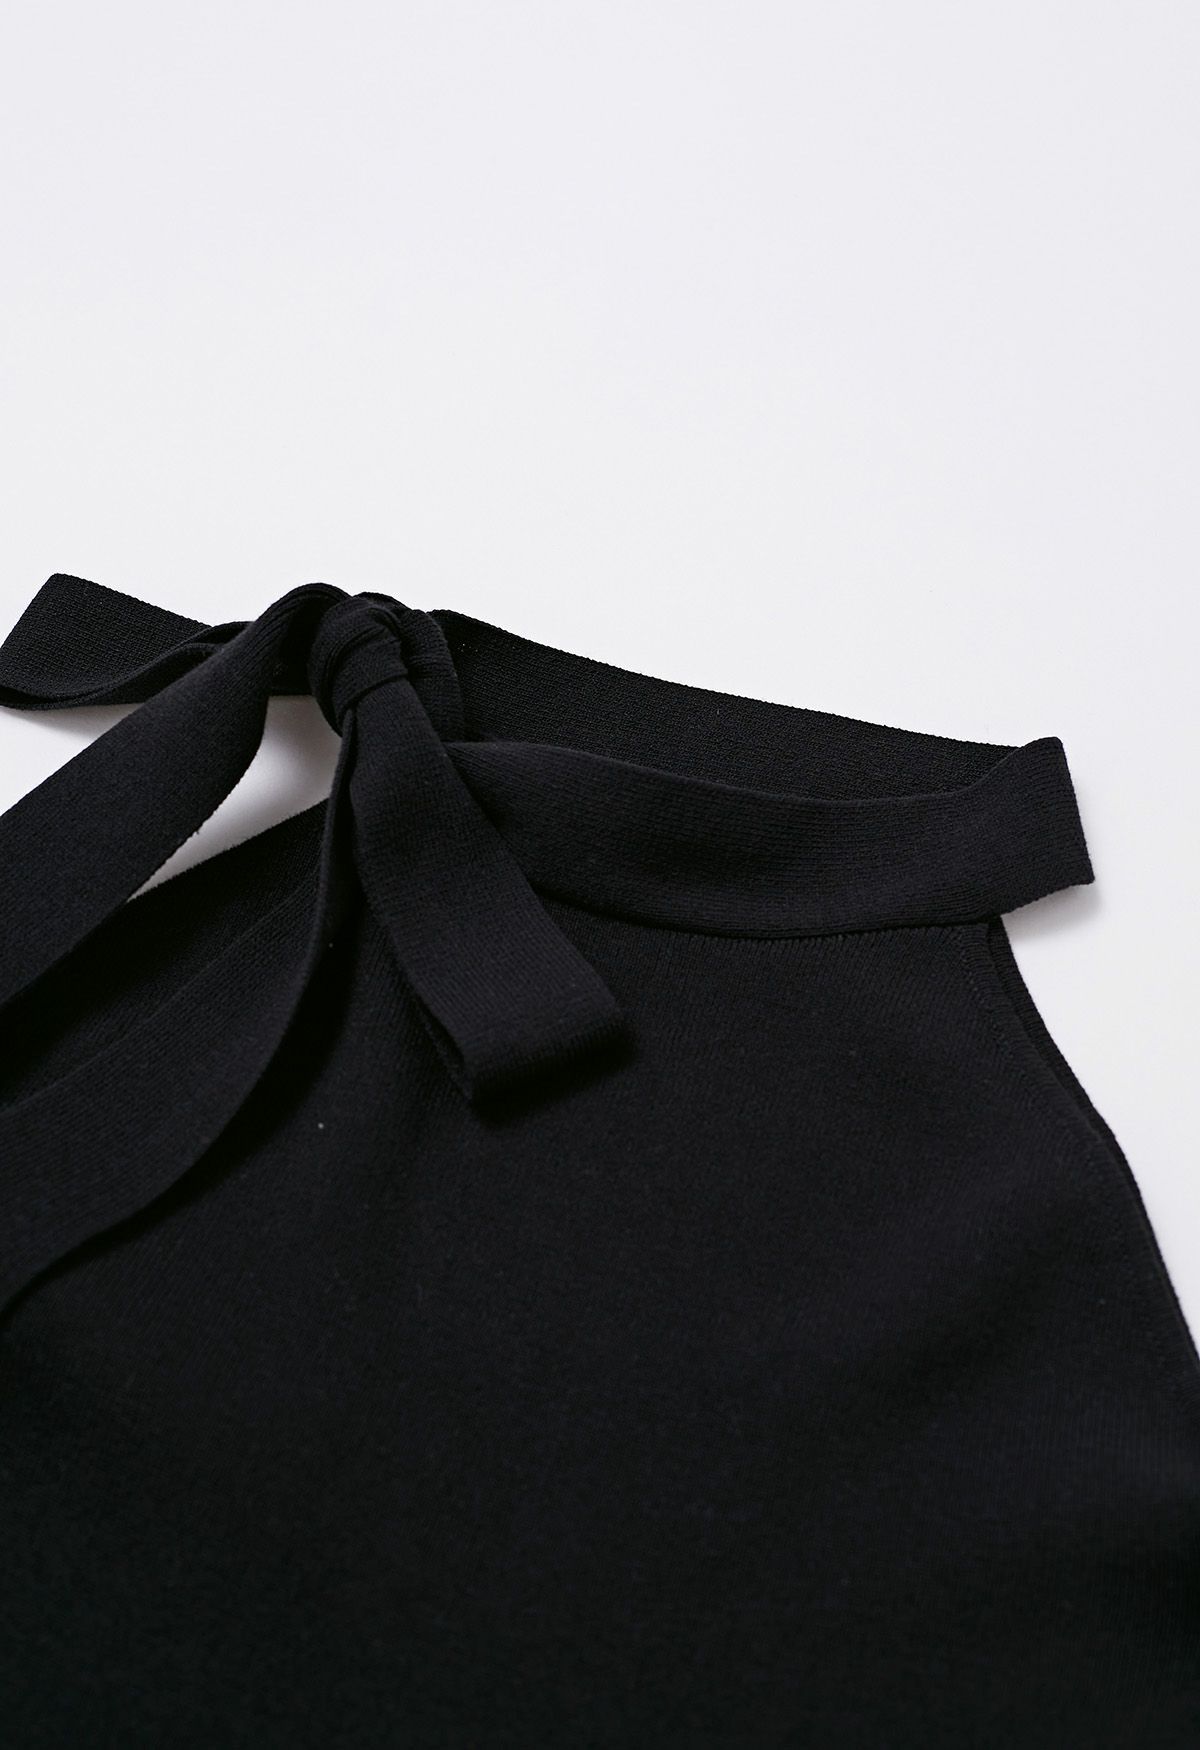 Side Bowknot Neckline Bodycon Knit Dress in Black